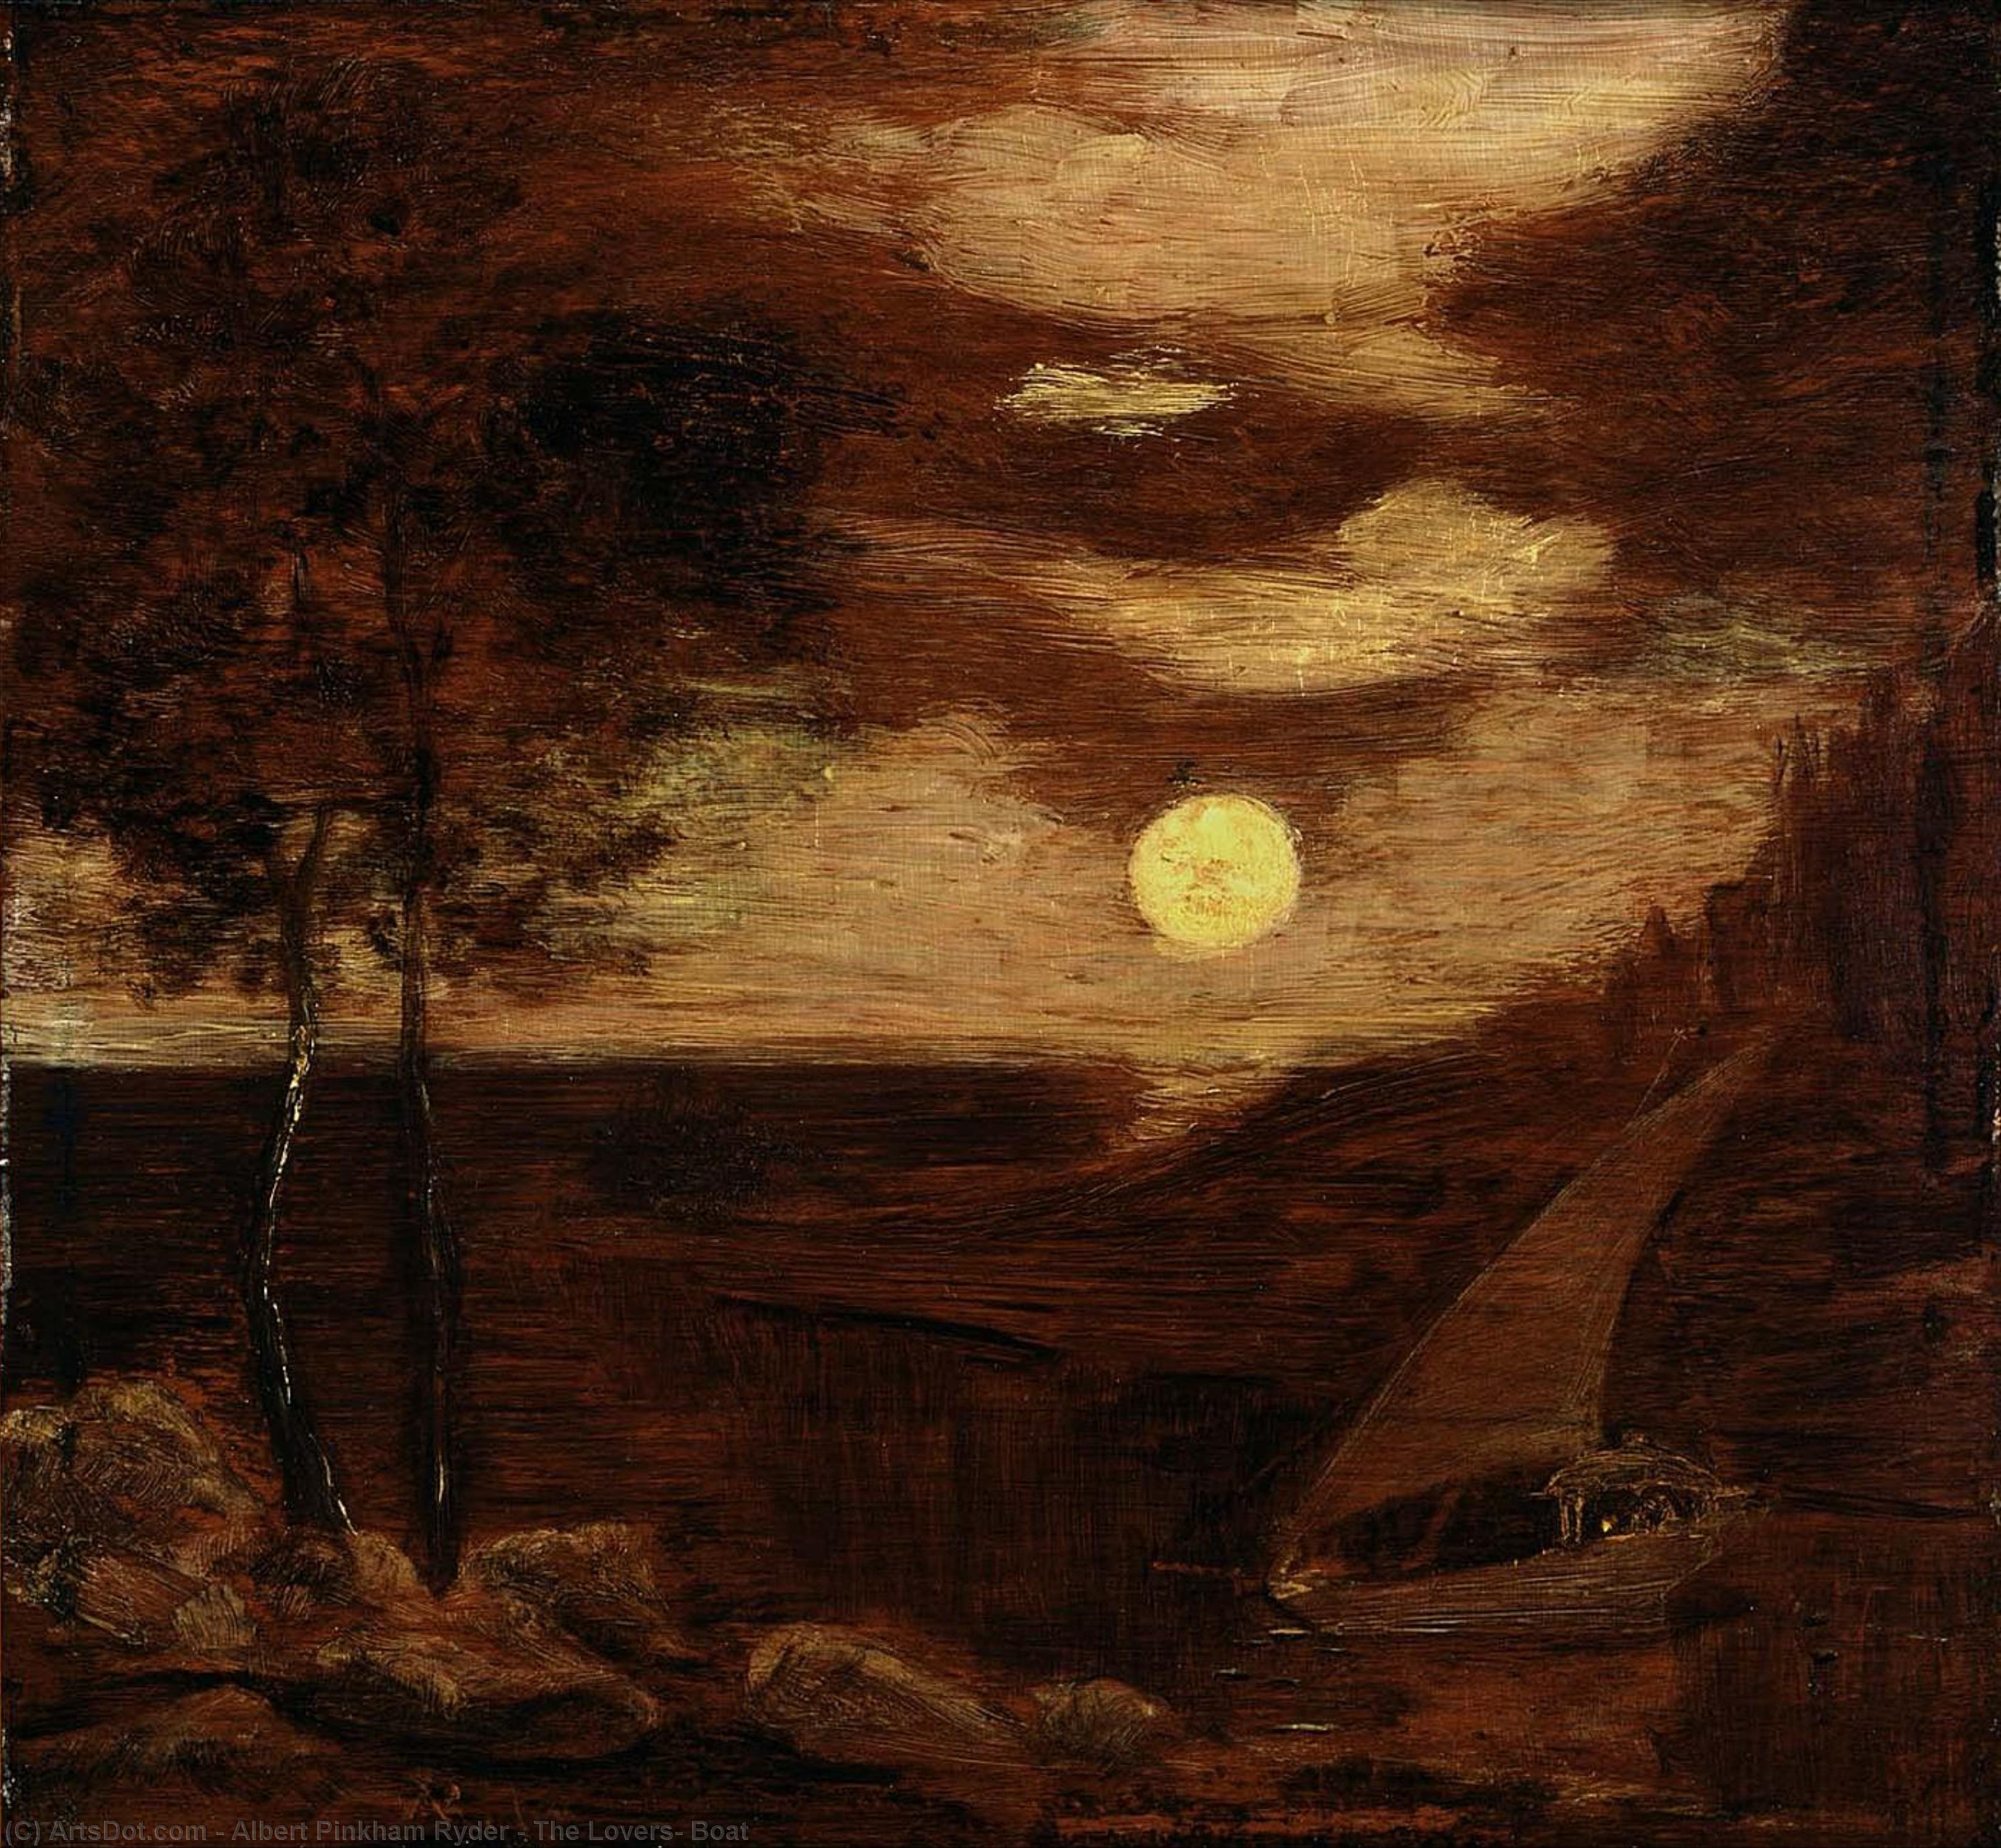 WikiOO.org - Enciclopedia of Fine Arts - Pictura, lucrări de artă Albert Pinkham Ryder - The Lovers' Boat